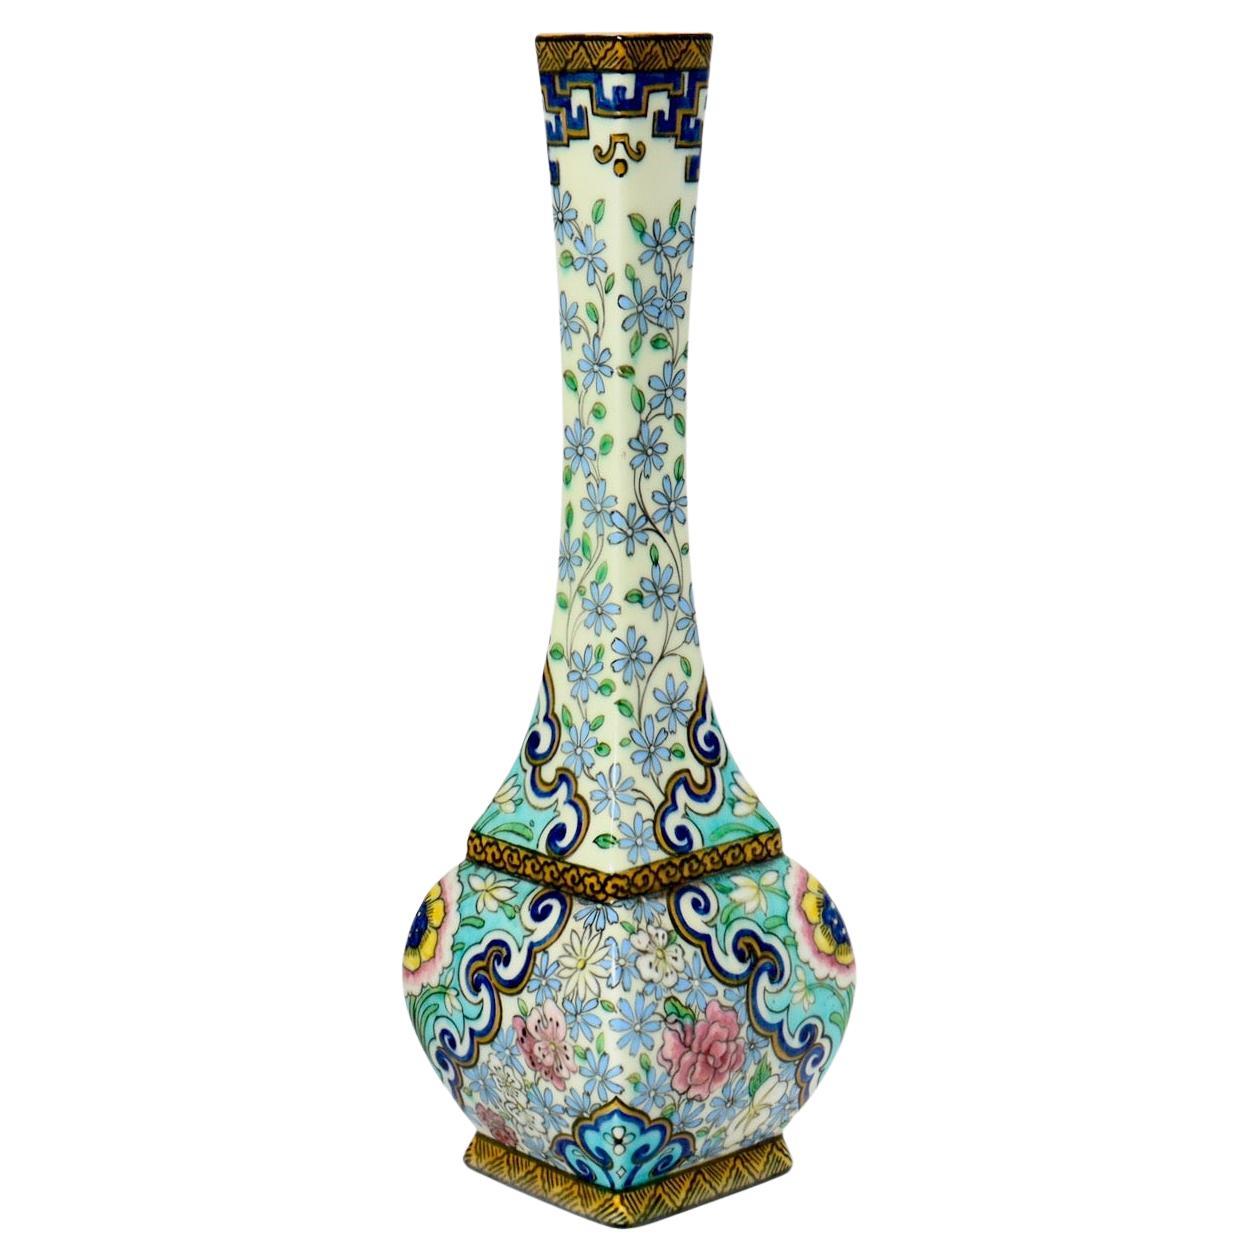 Théodore DECK (1823-1891)
Vase soliflore et de forme quadrangulaire en faïence émaillée polychrome avec un design d'inspiration sino-japonaise composé de fleurs et de frises géométriques tout autour.
Marque majuscule imprimée 